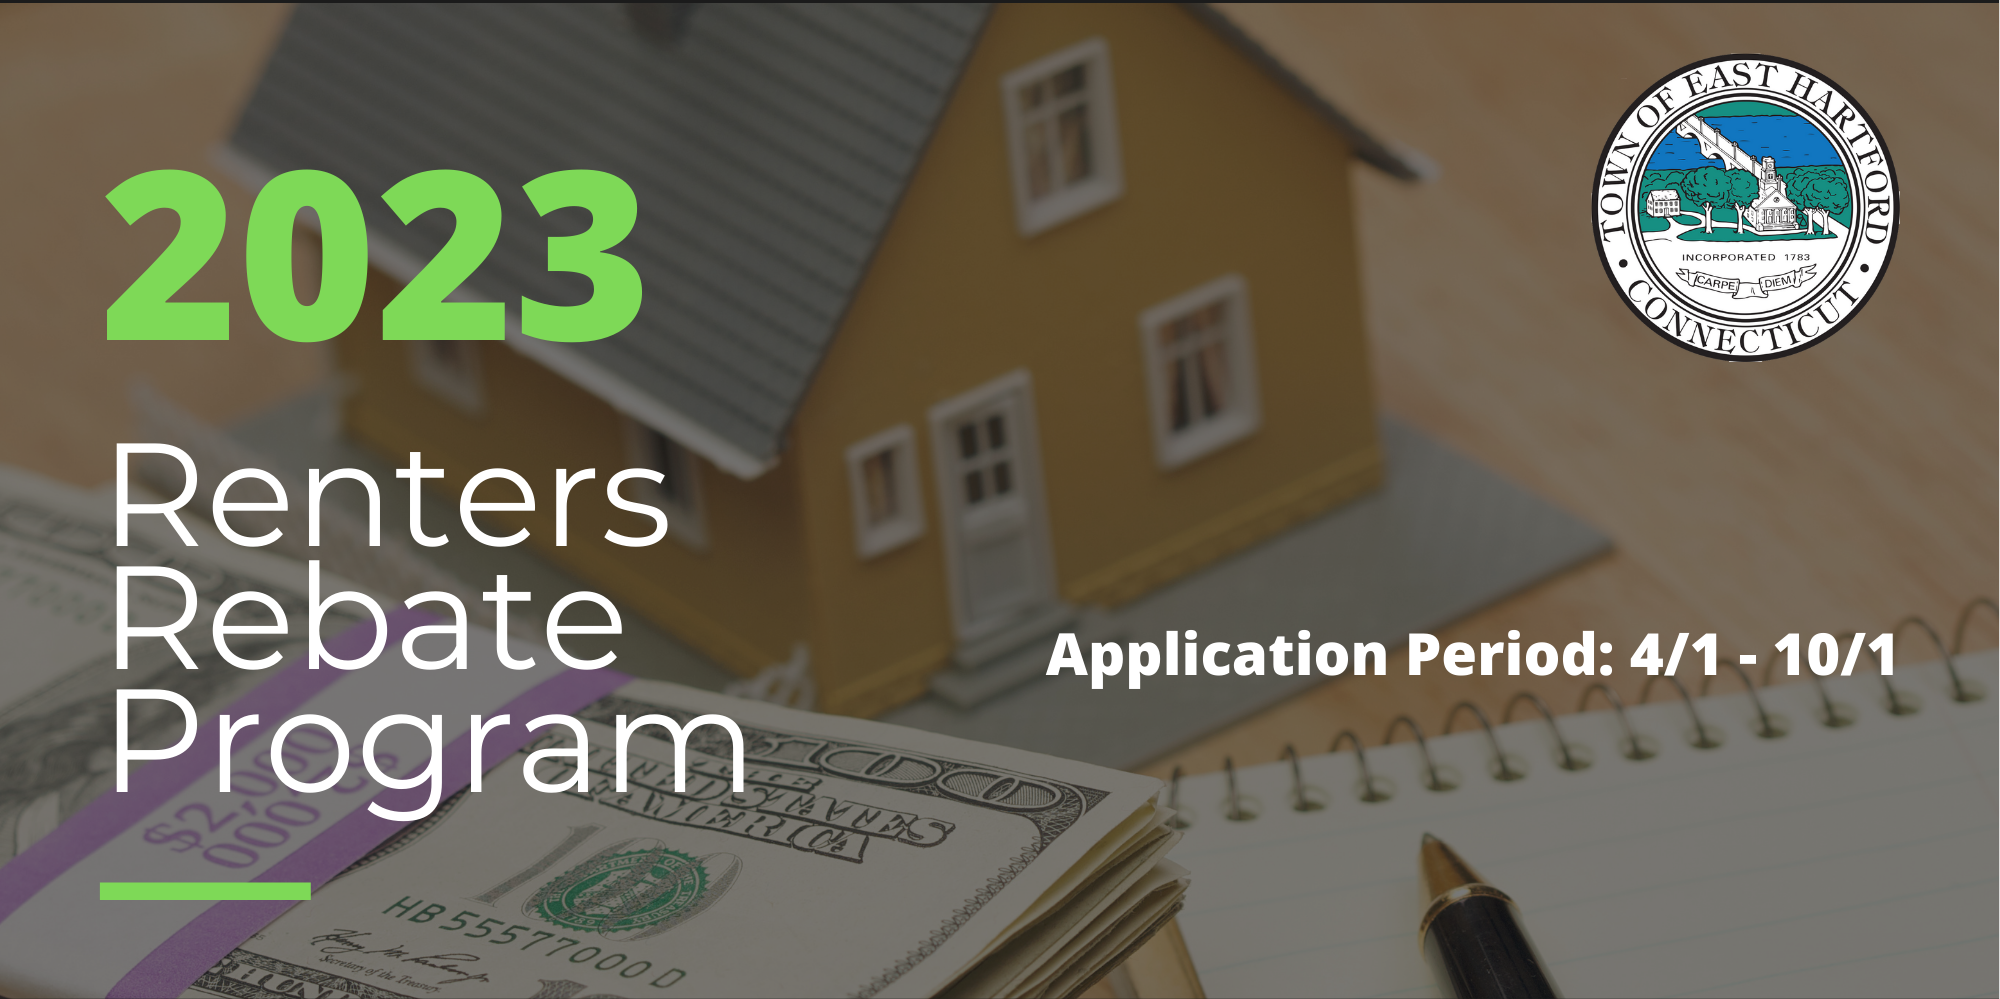 ct-renters-rebate-application-printable-rebate-form